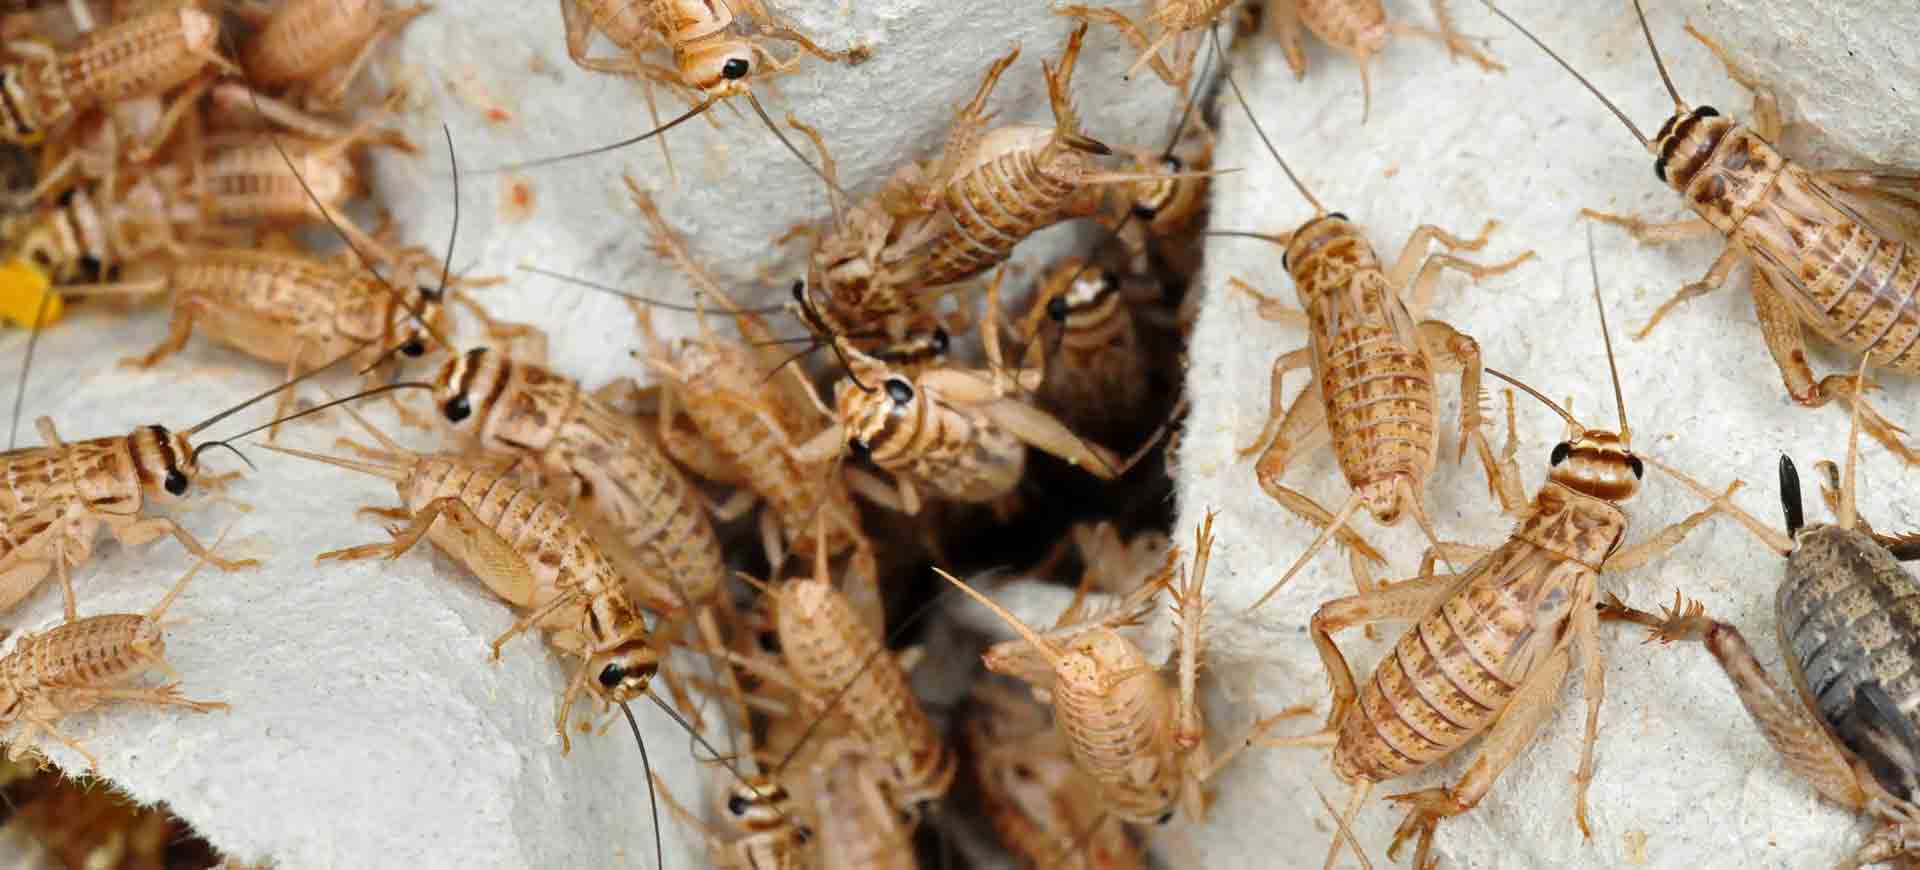 cricket pest control tierrasanta